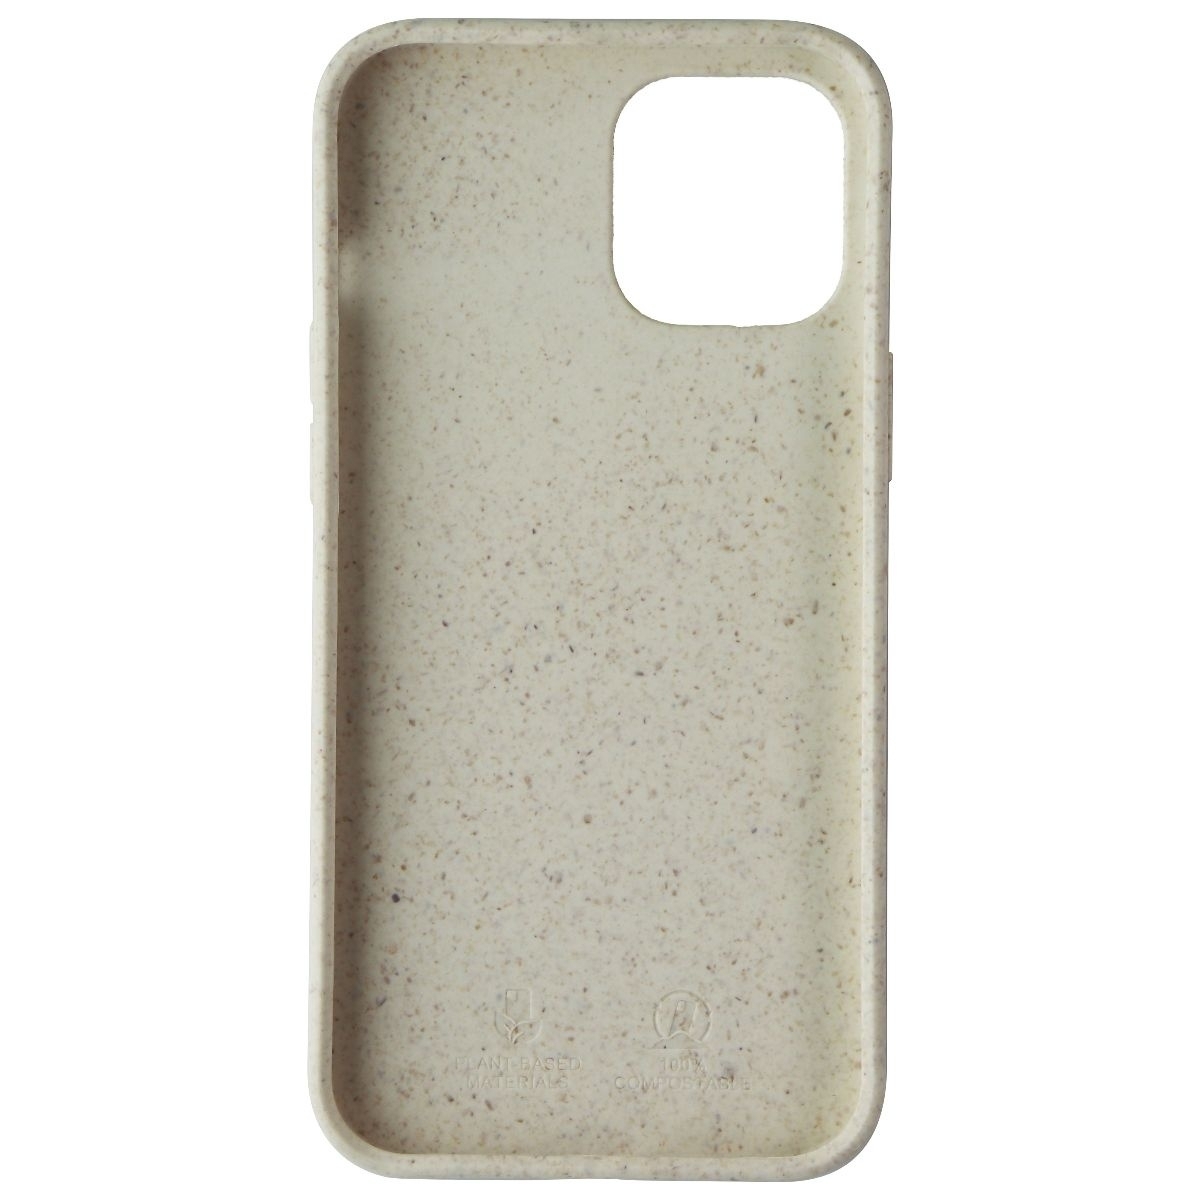 Nimbus9 Vega Biodegradable Case Sandstone For IPhone 12 Pro Max Cases